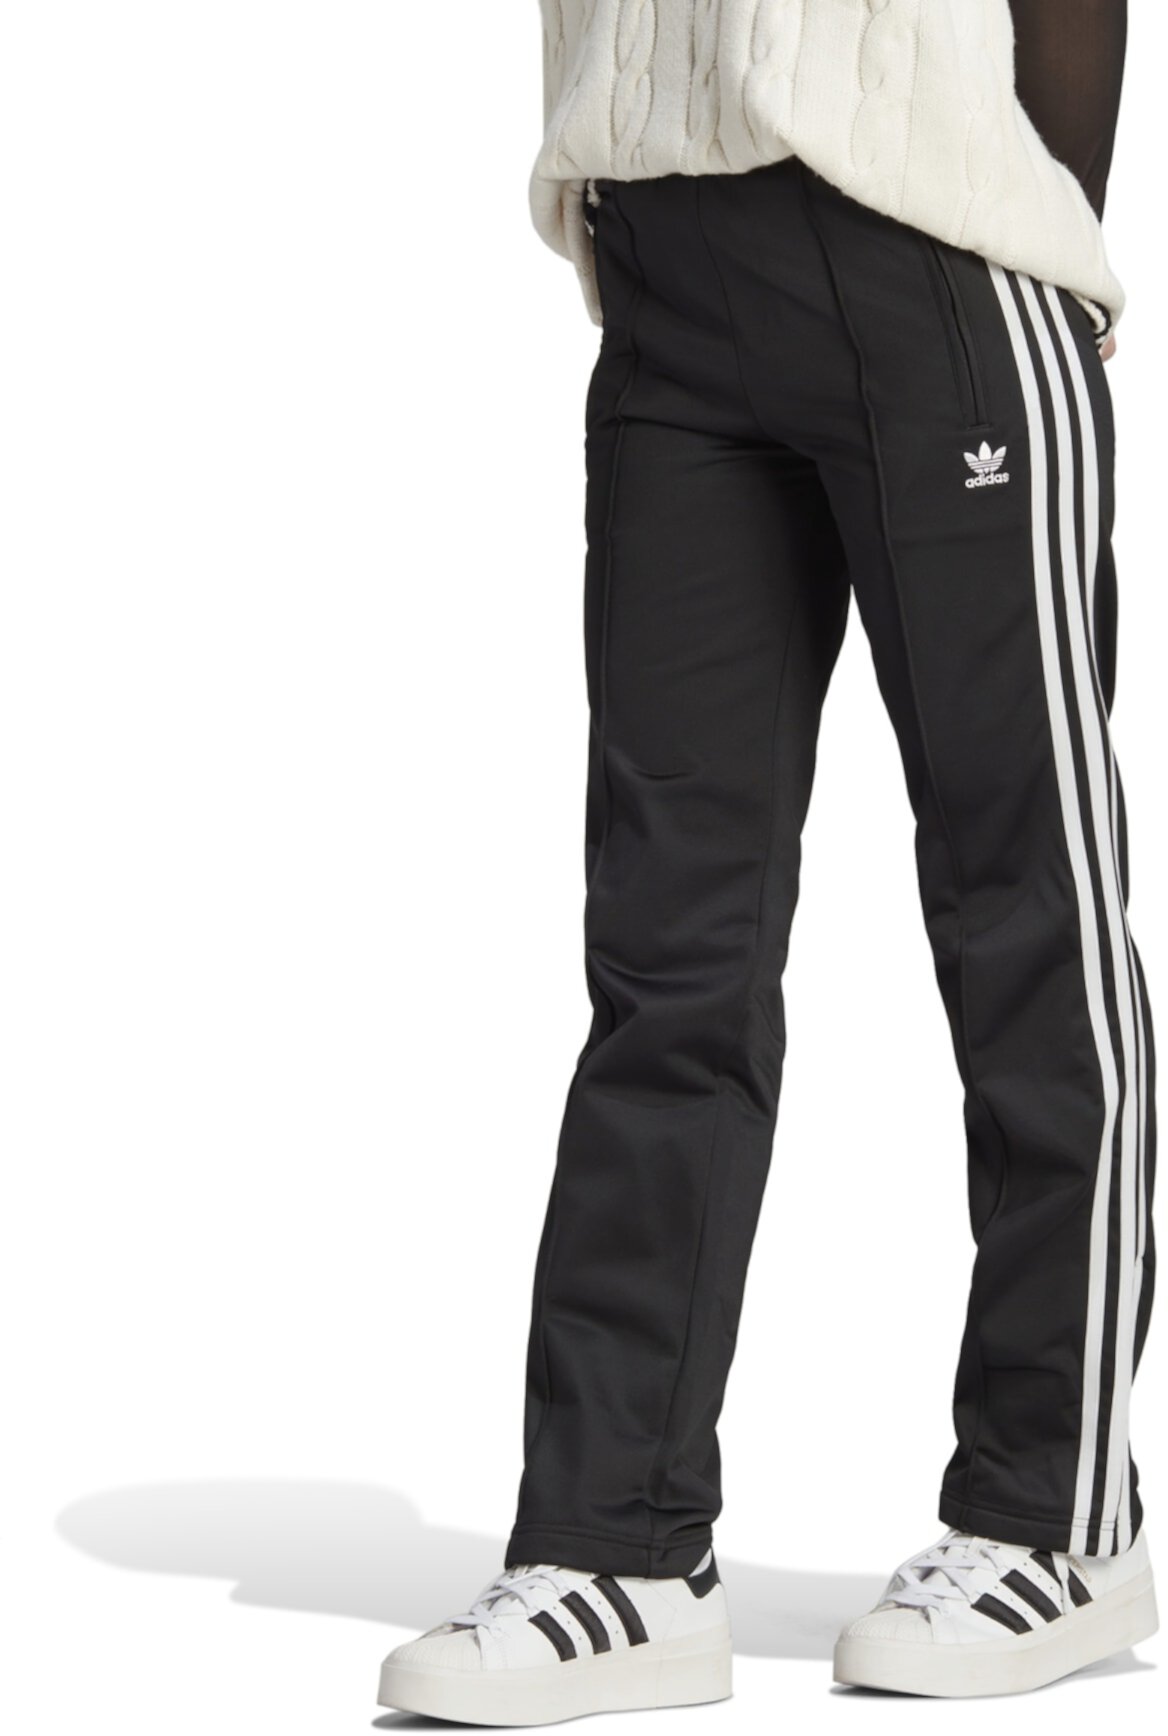 Спортивные штаны Firebird Adidas